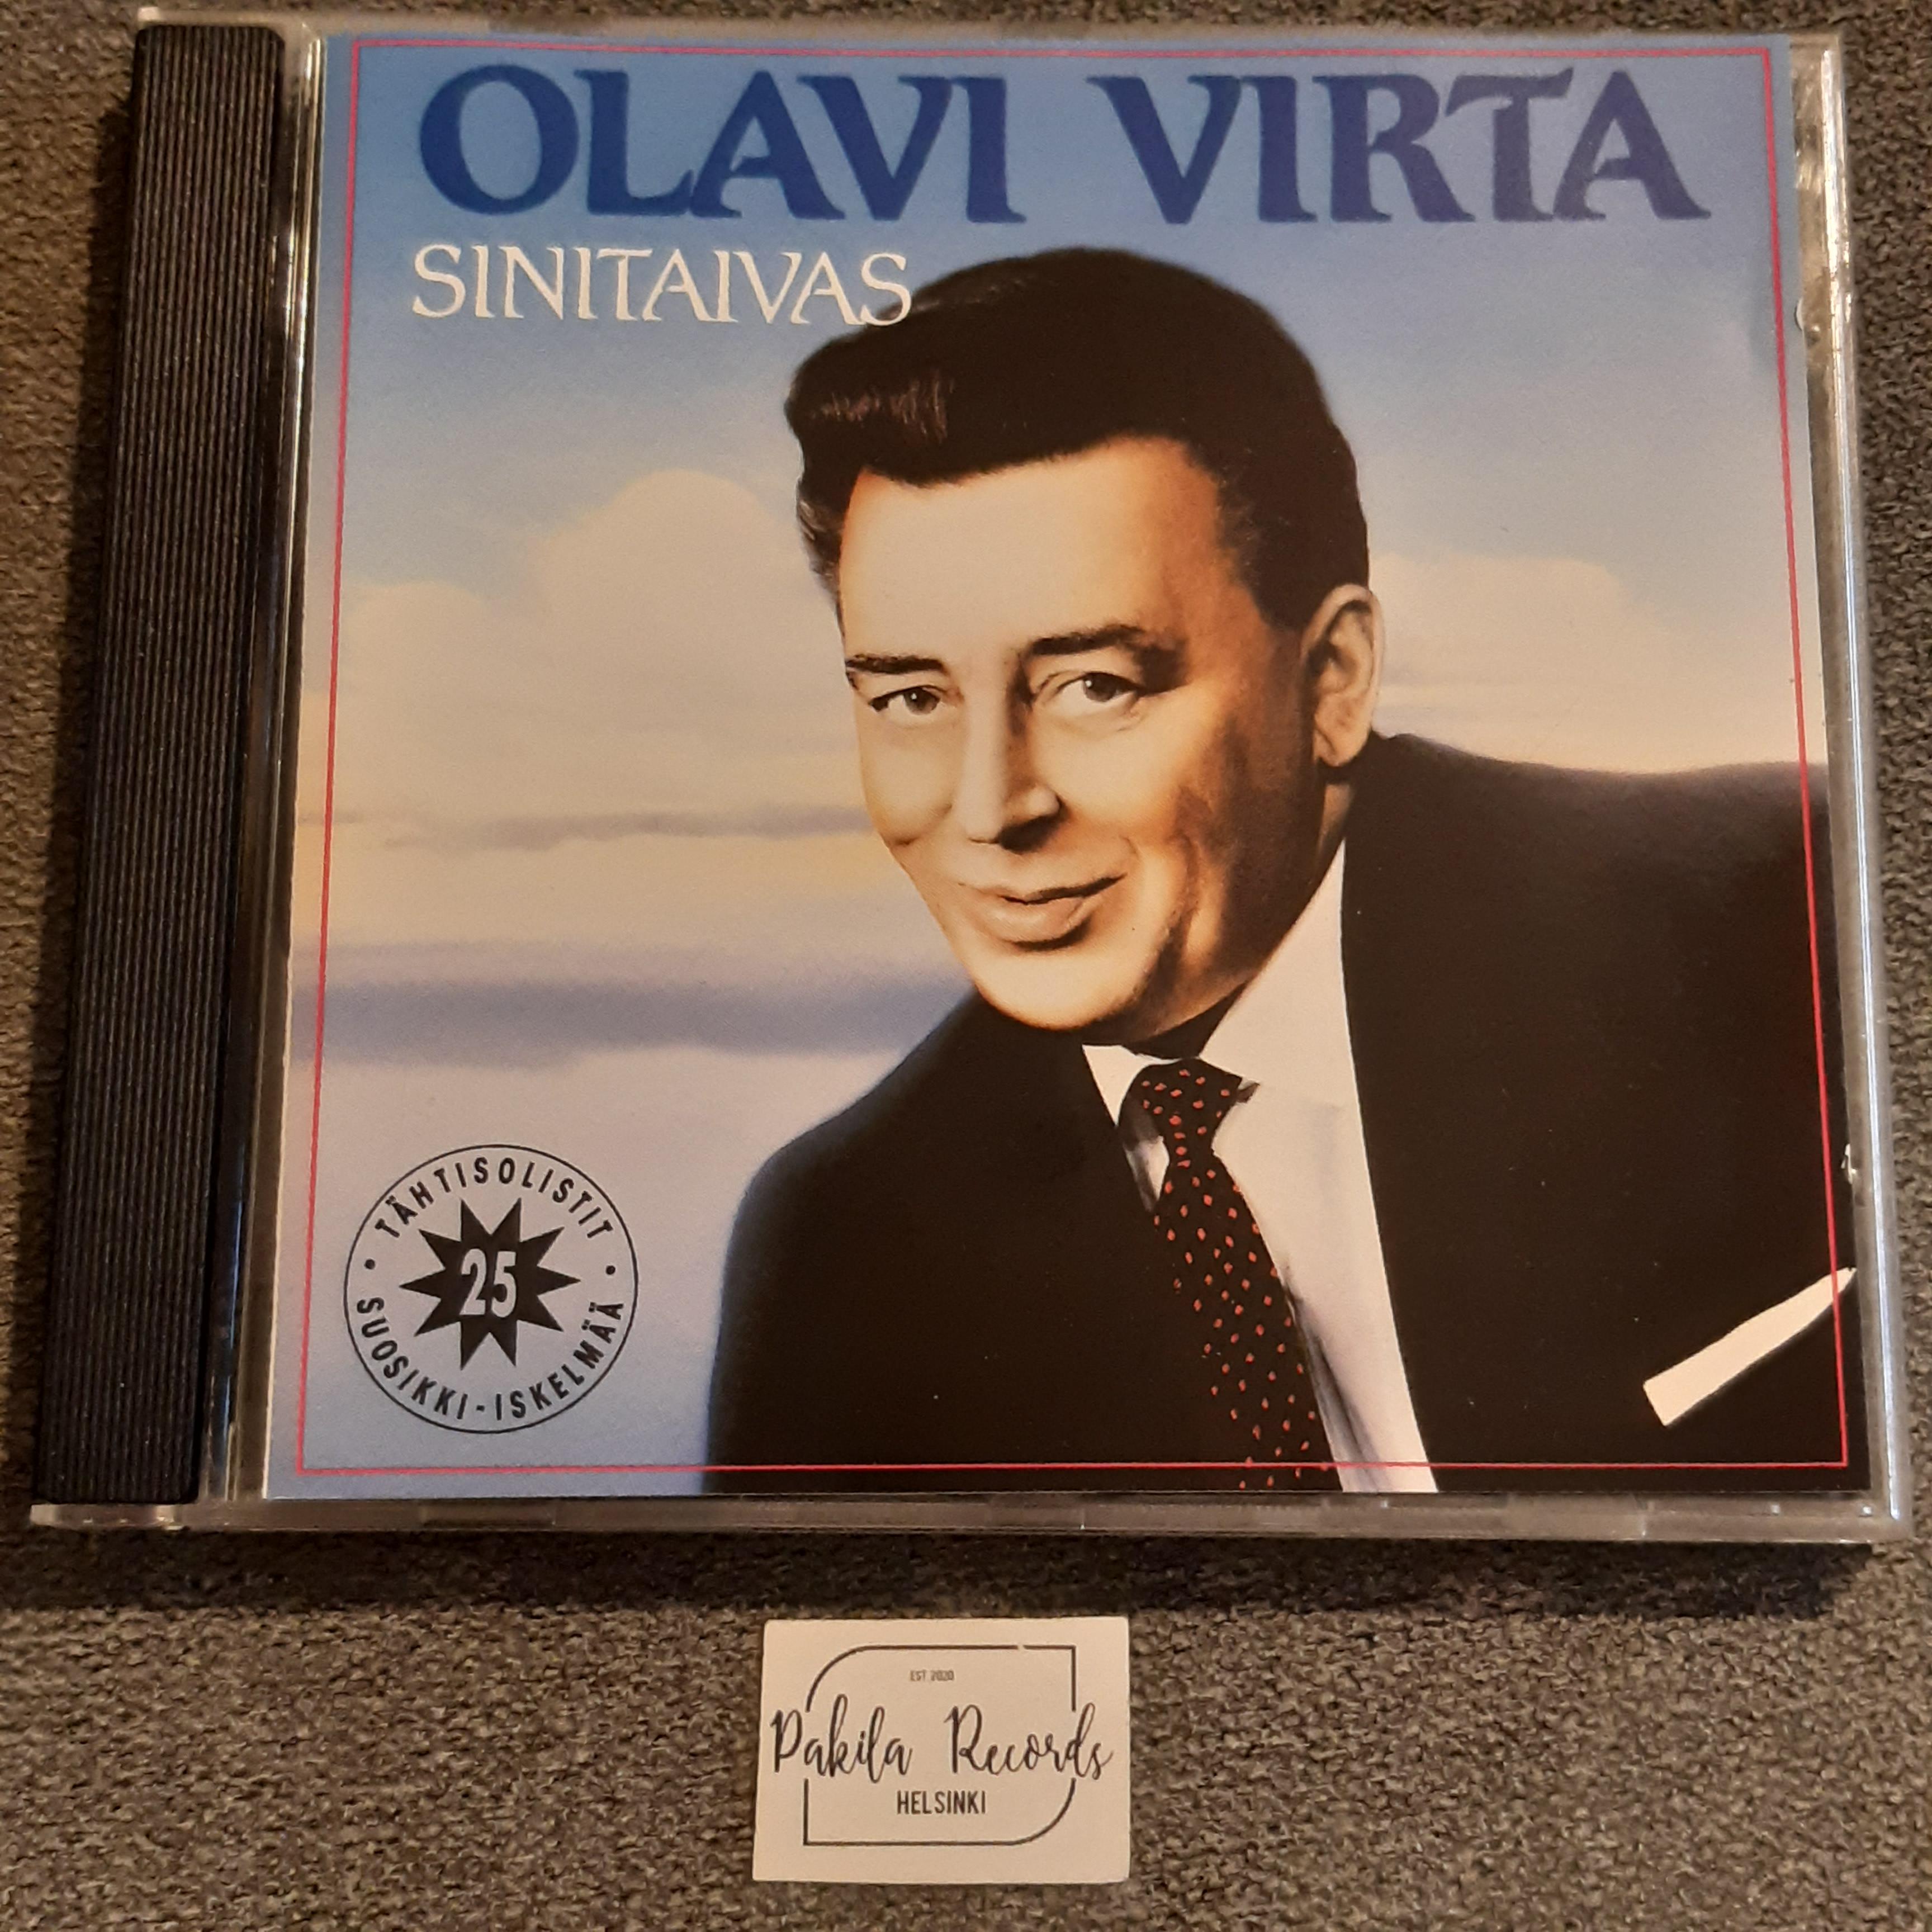 Olavi Virta - Sinitaivas - CD (käytetty)